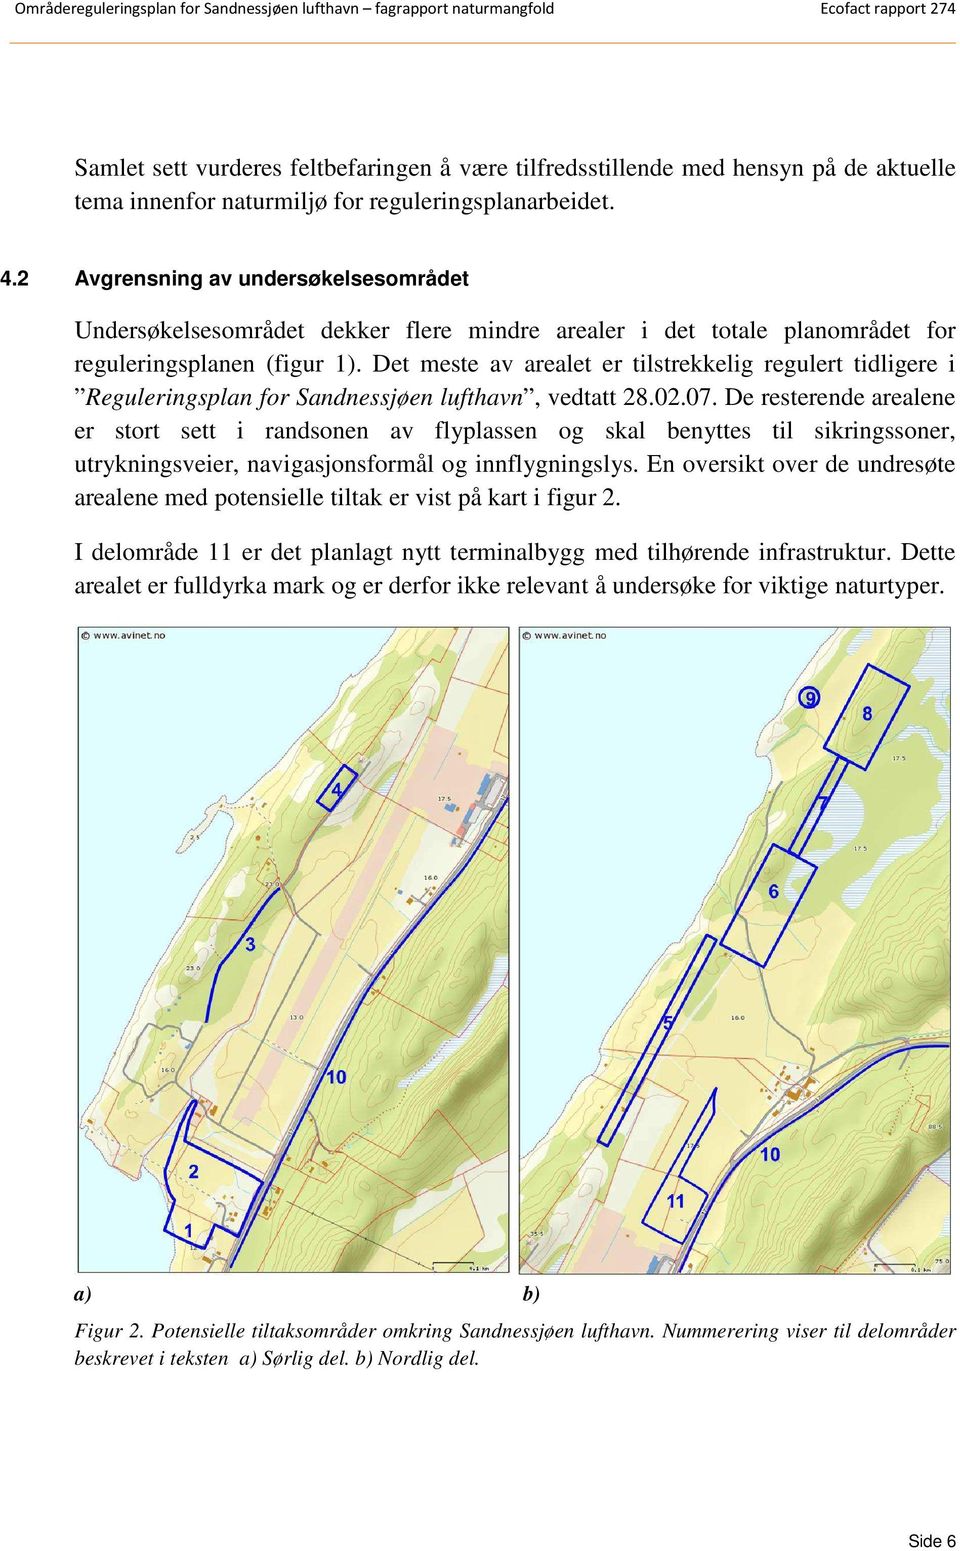 Det meste av arealet er tilstrekkelig regulert tidligere i Reguleringsplan for Sandnessjøen lufthavn, vedtatt 28.02.07.